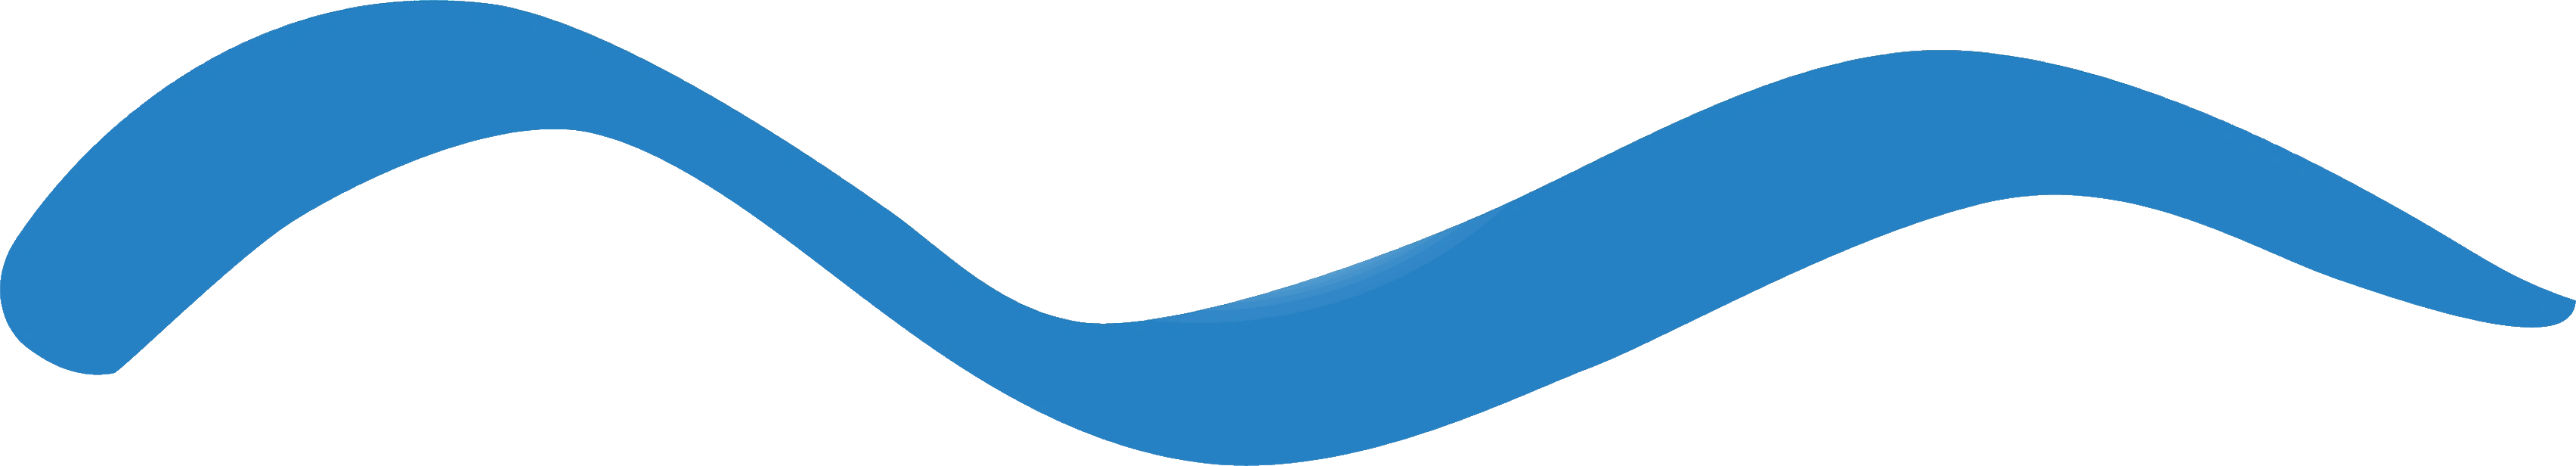 Onda del logo del parco acquatico AquaFelix